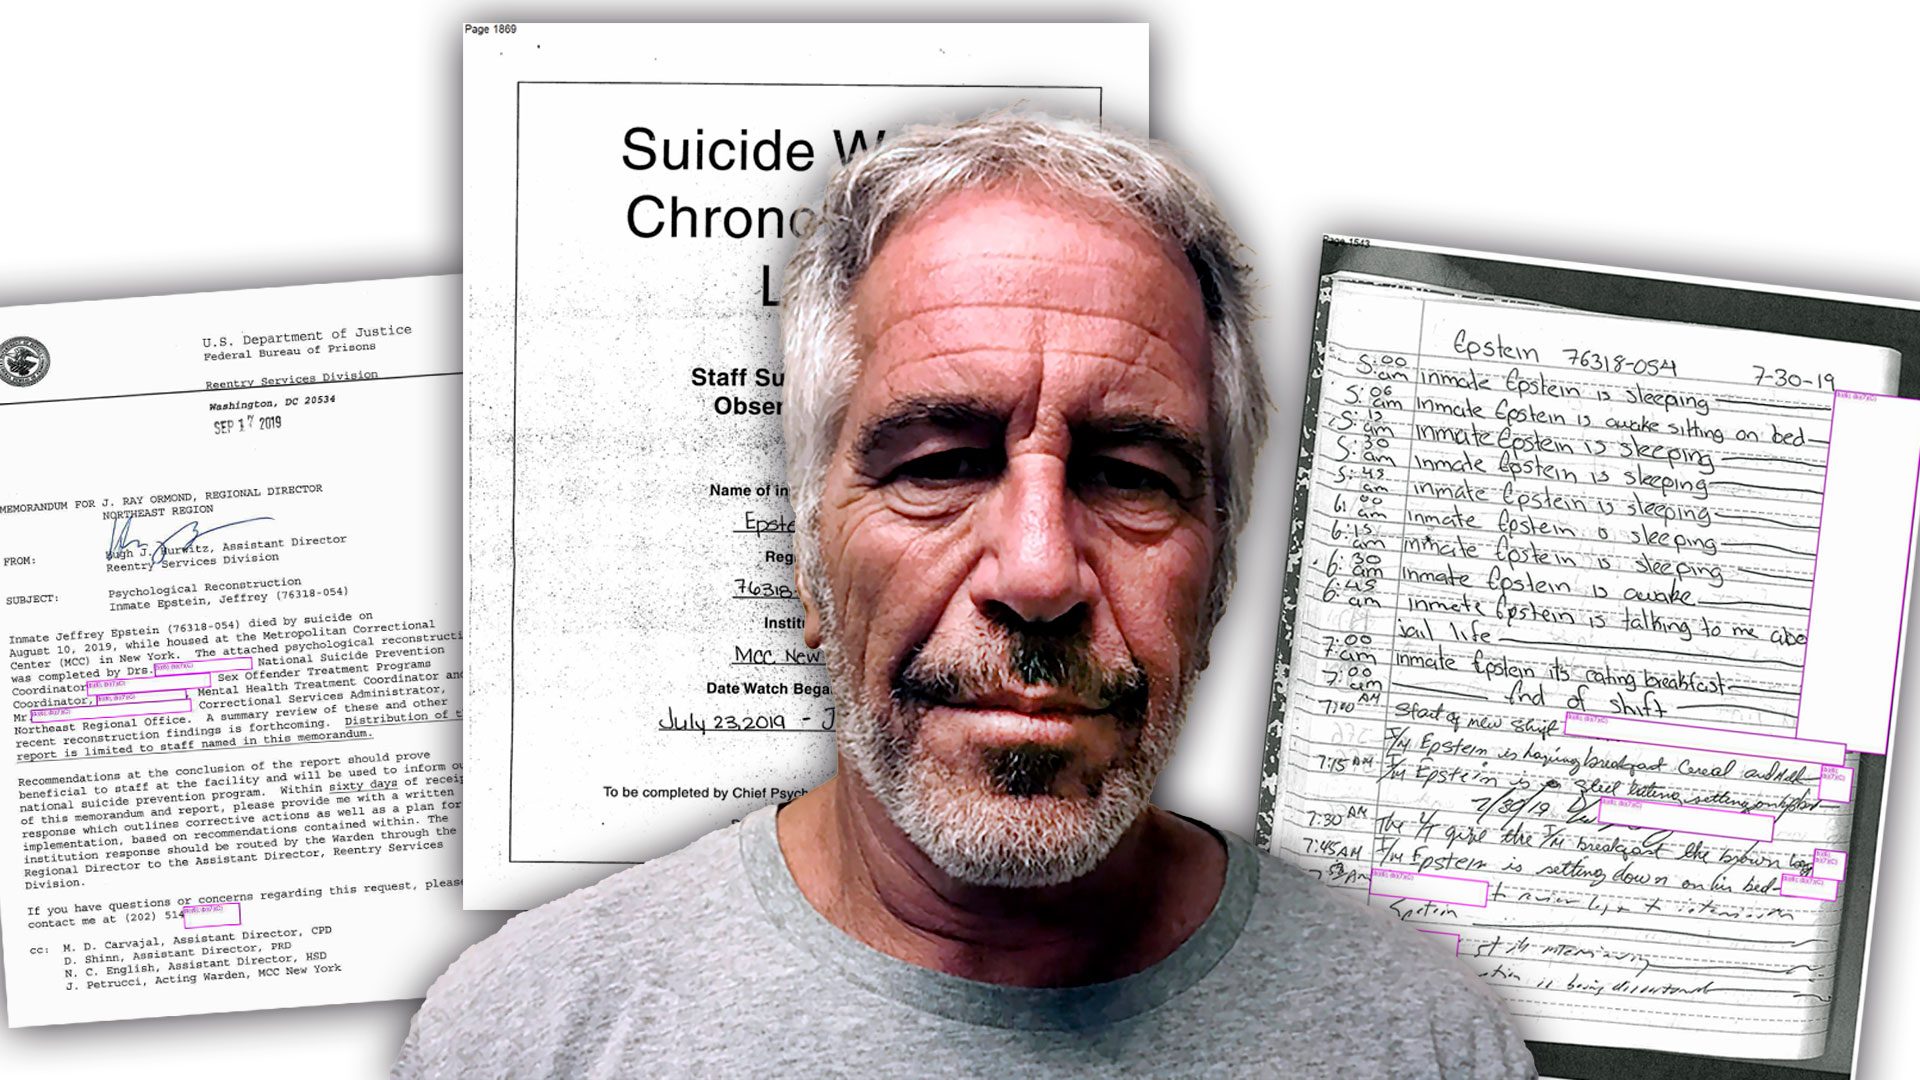 “El interno Jeffrey Epstein está durmiendo”: documentos revelaron detalles de su muerte y los últimos días en la cárcel